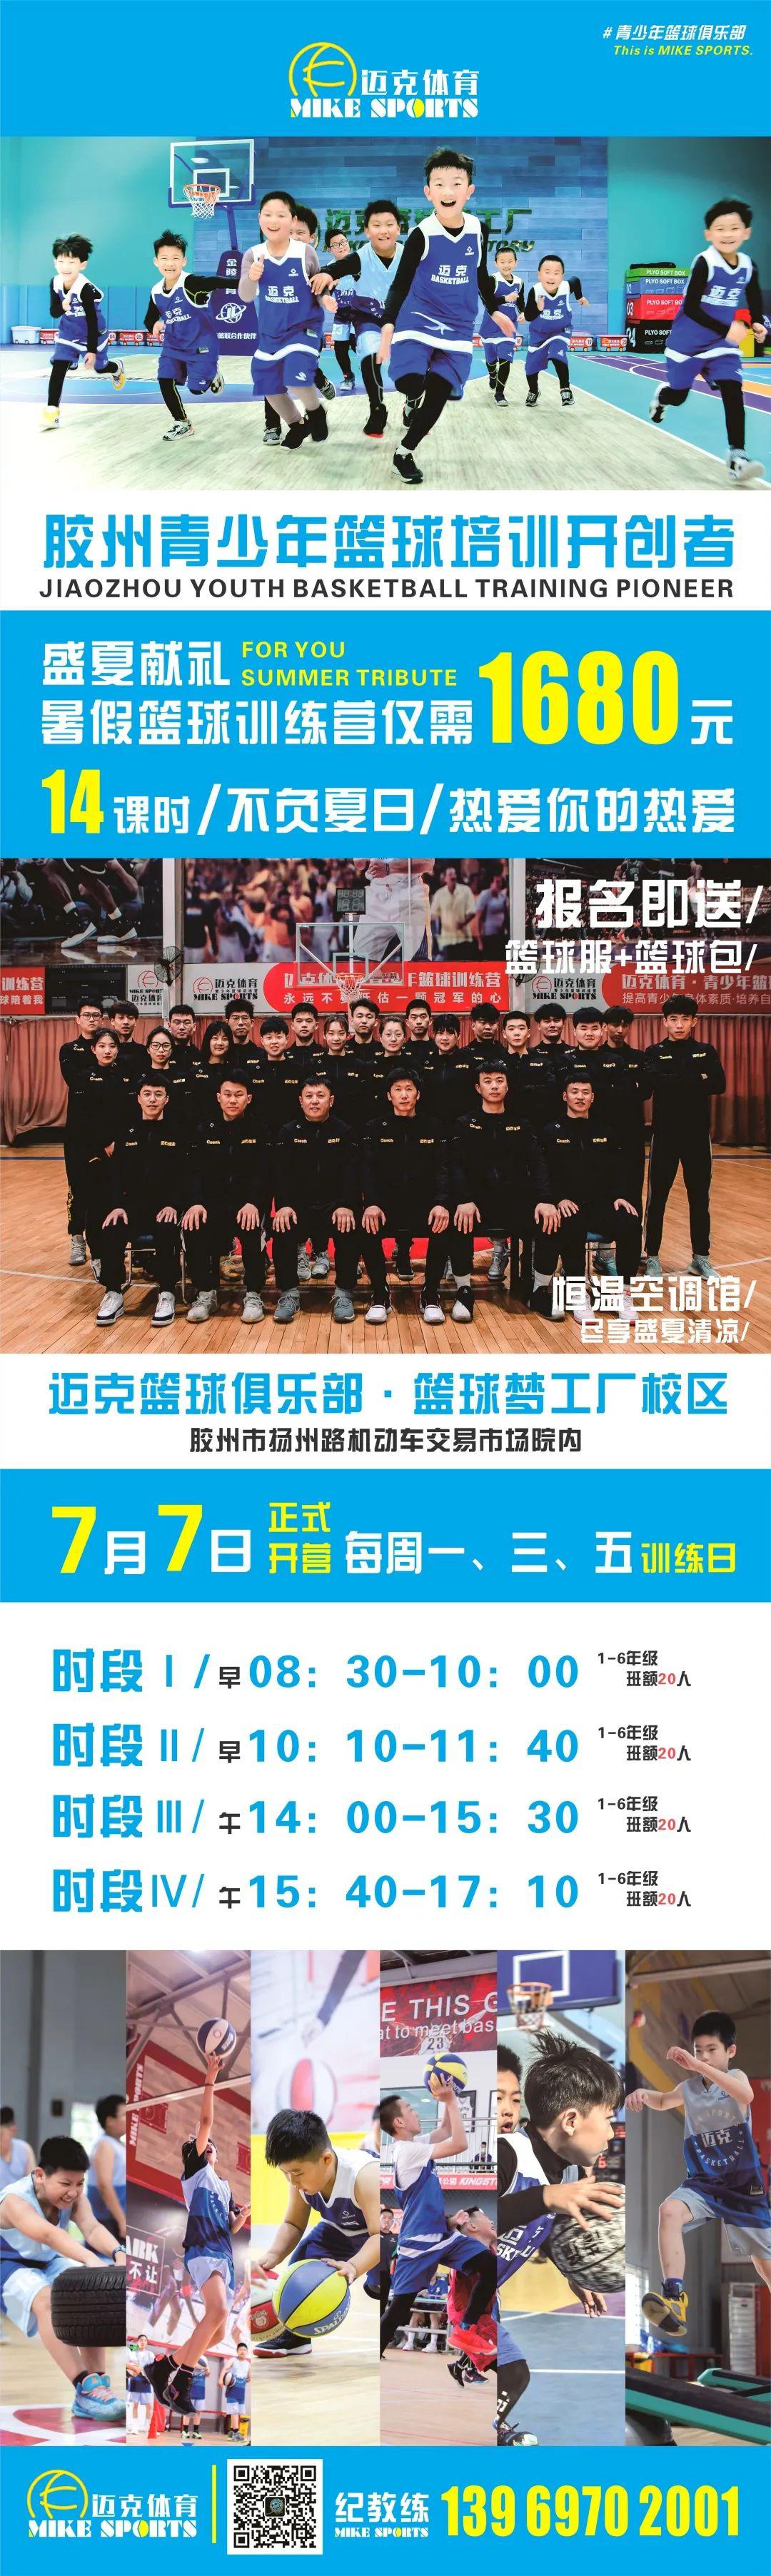 2021迈克篮球暑假班-报名开启(2)